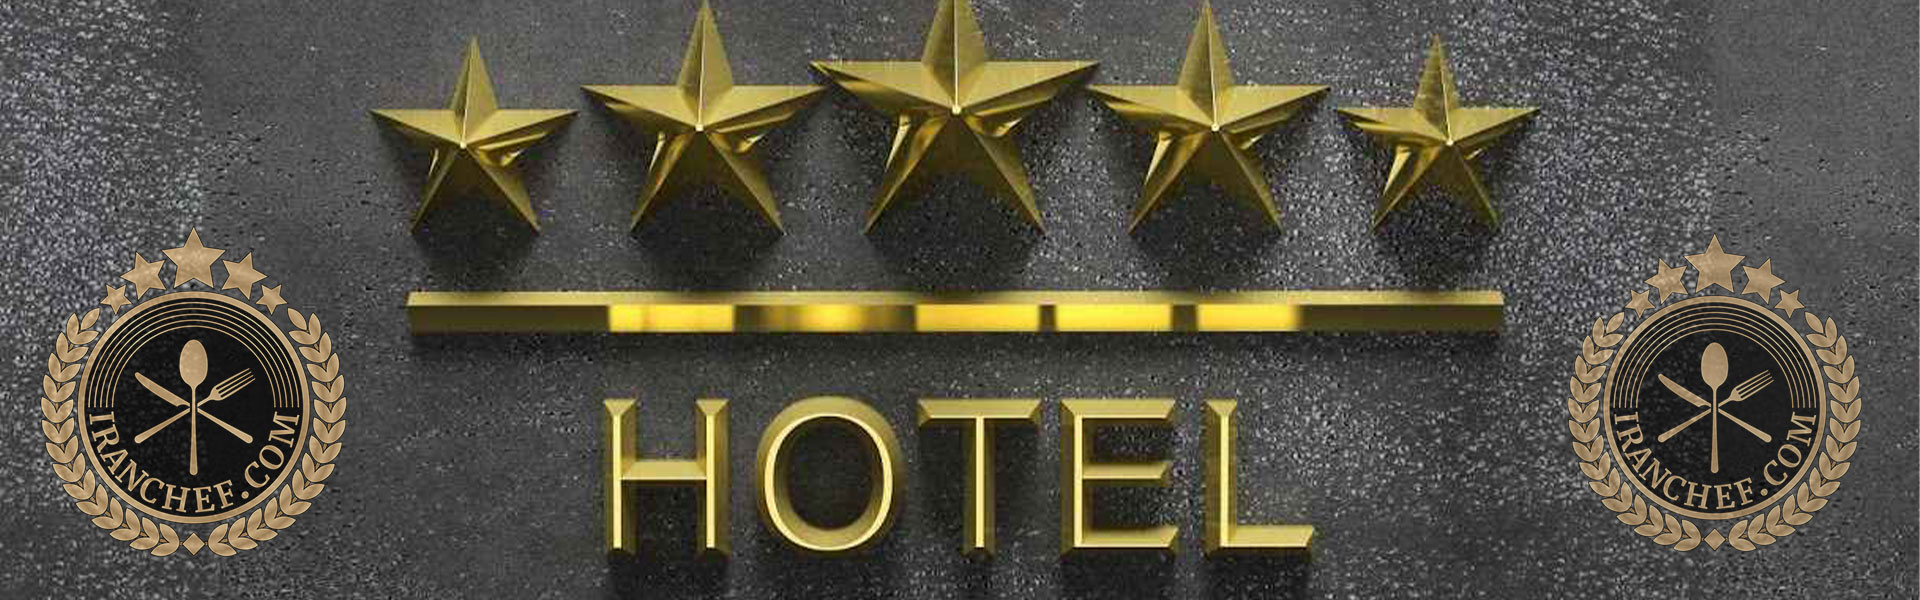 درجه بندی و رتبه بندی هتلها برچه معیاری است؟ آکادمی ایران شف